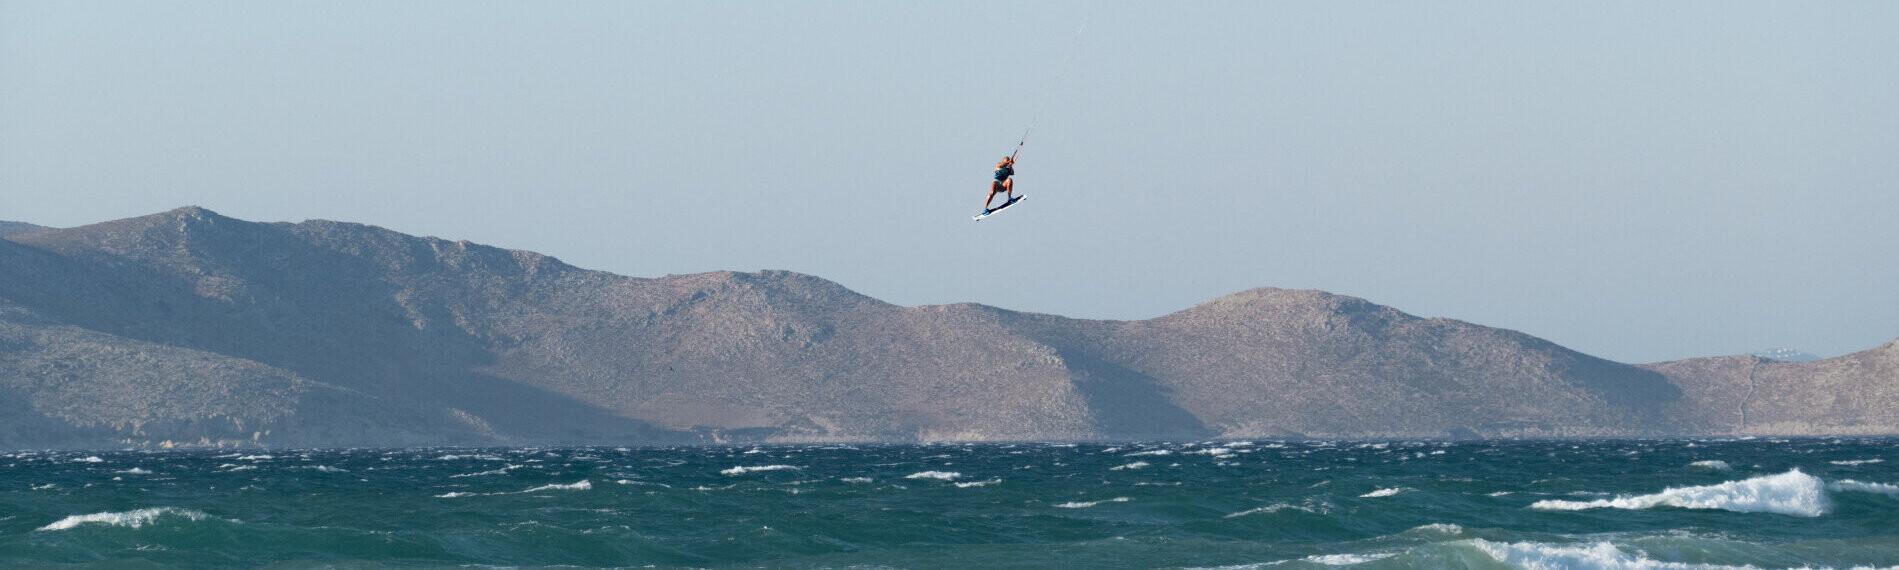 Kitesurfer springt über wellige See mit Bergen von Marmari auf Kos im Hintergrund